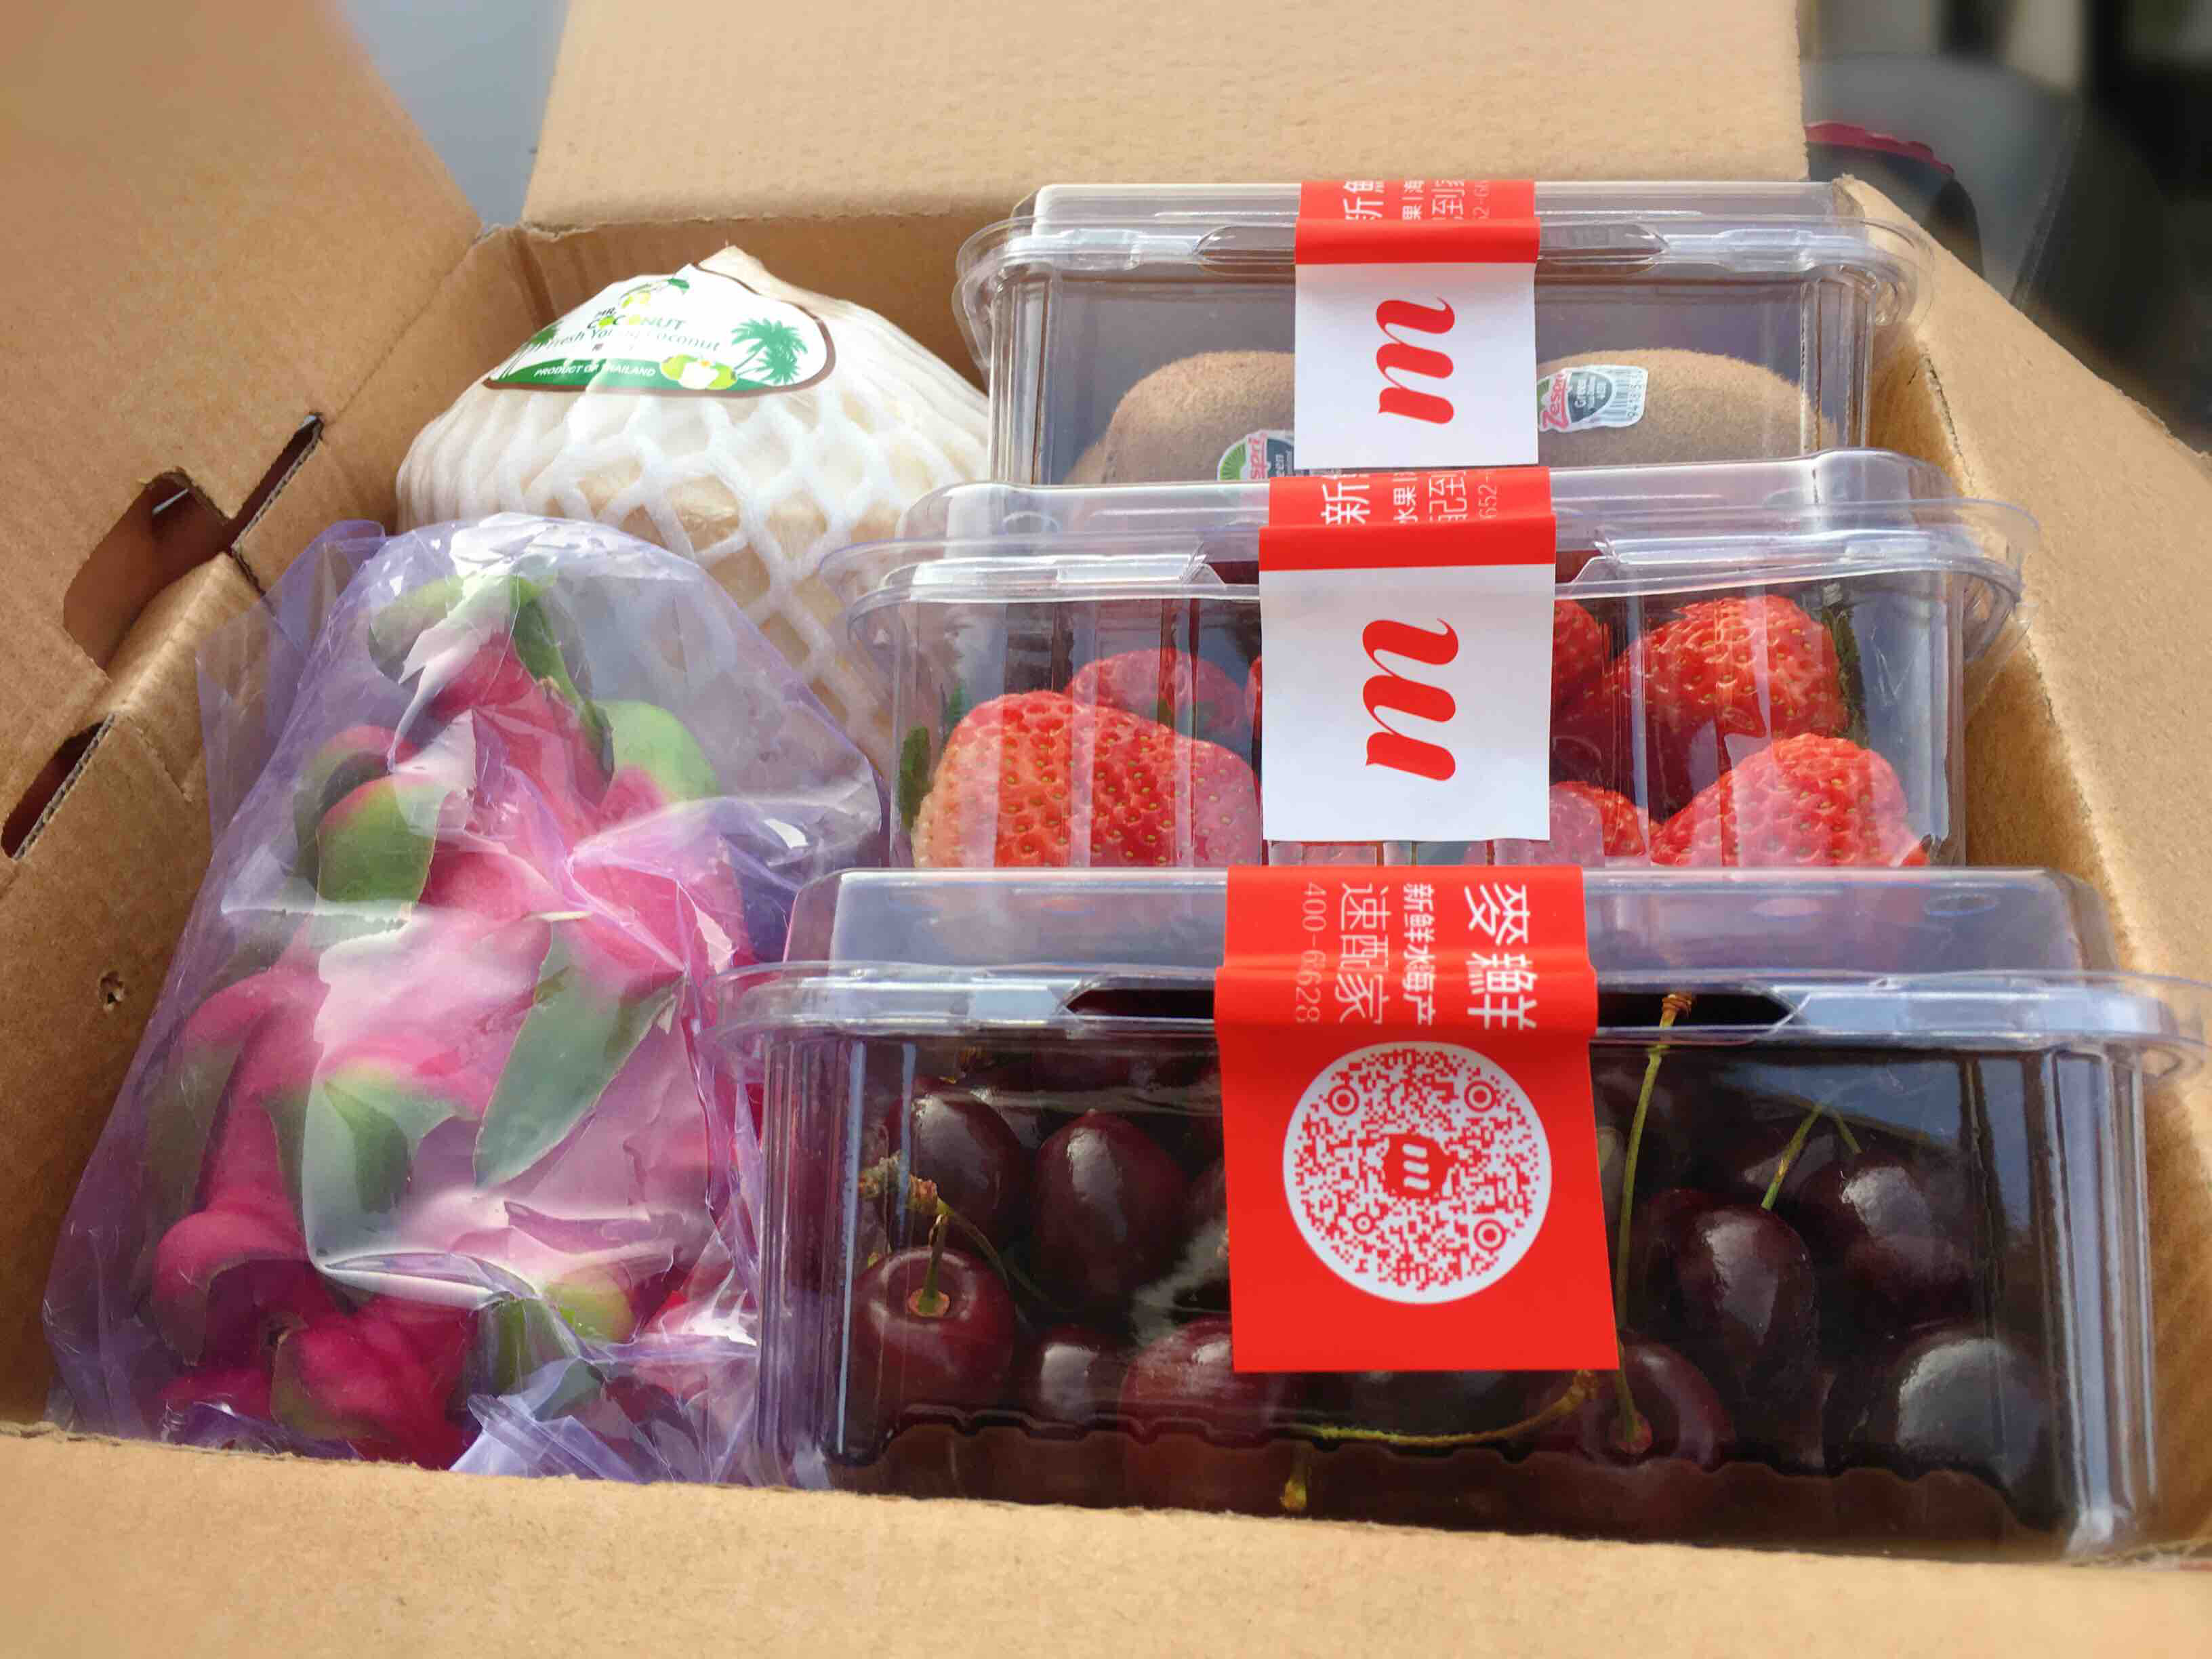 春节水果礼盒摆放图片图片